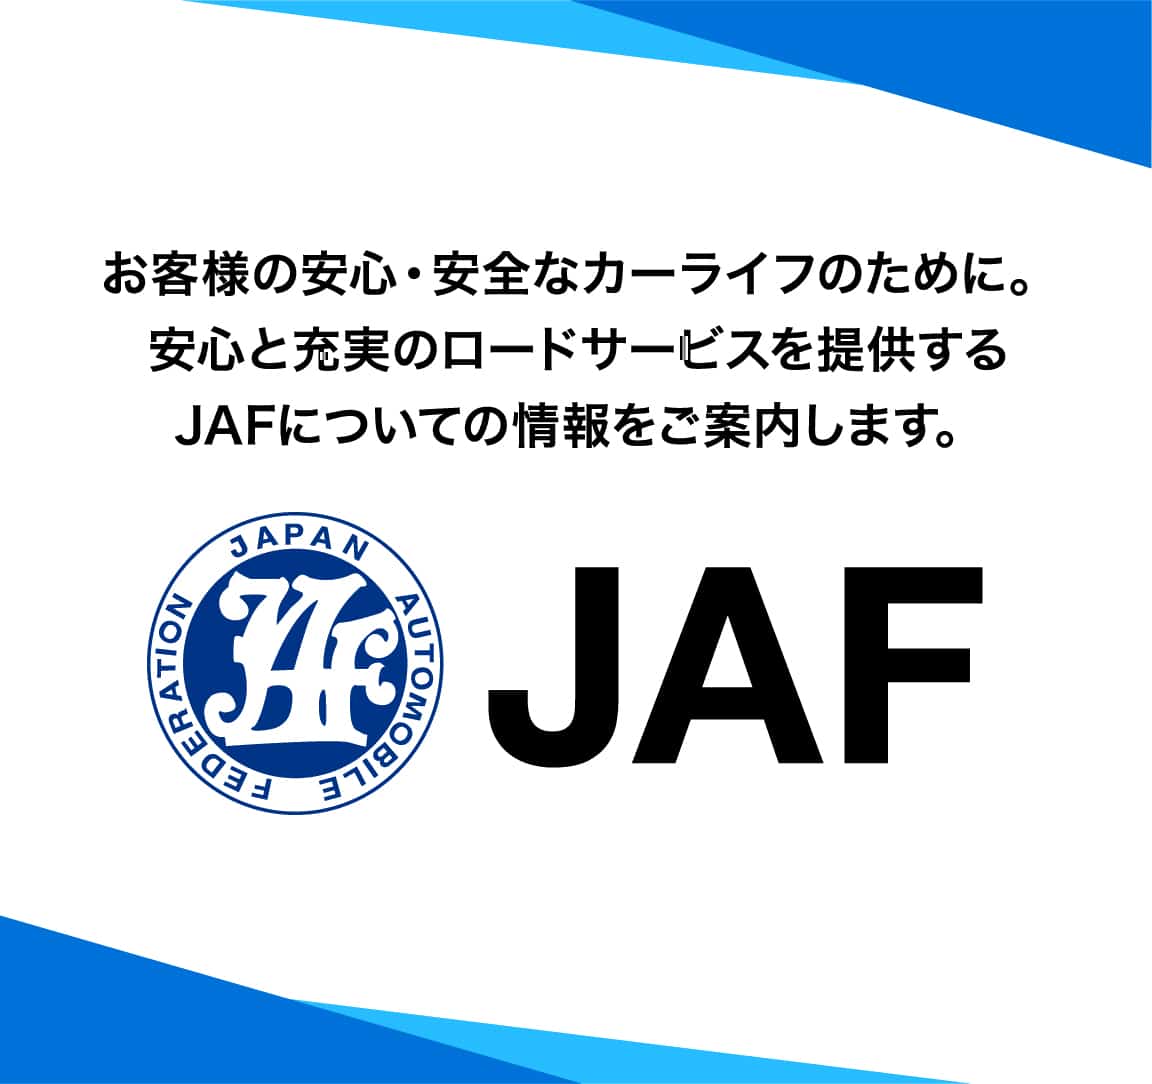 Jafの会員になりたい その他のサービス 静岡県でjaf会員になるなら県下no1カーディーラーのトヨタユナイテッド静岡へ